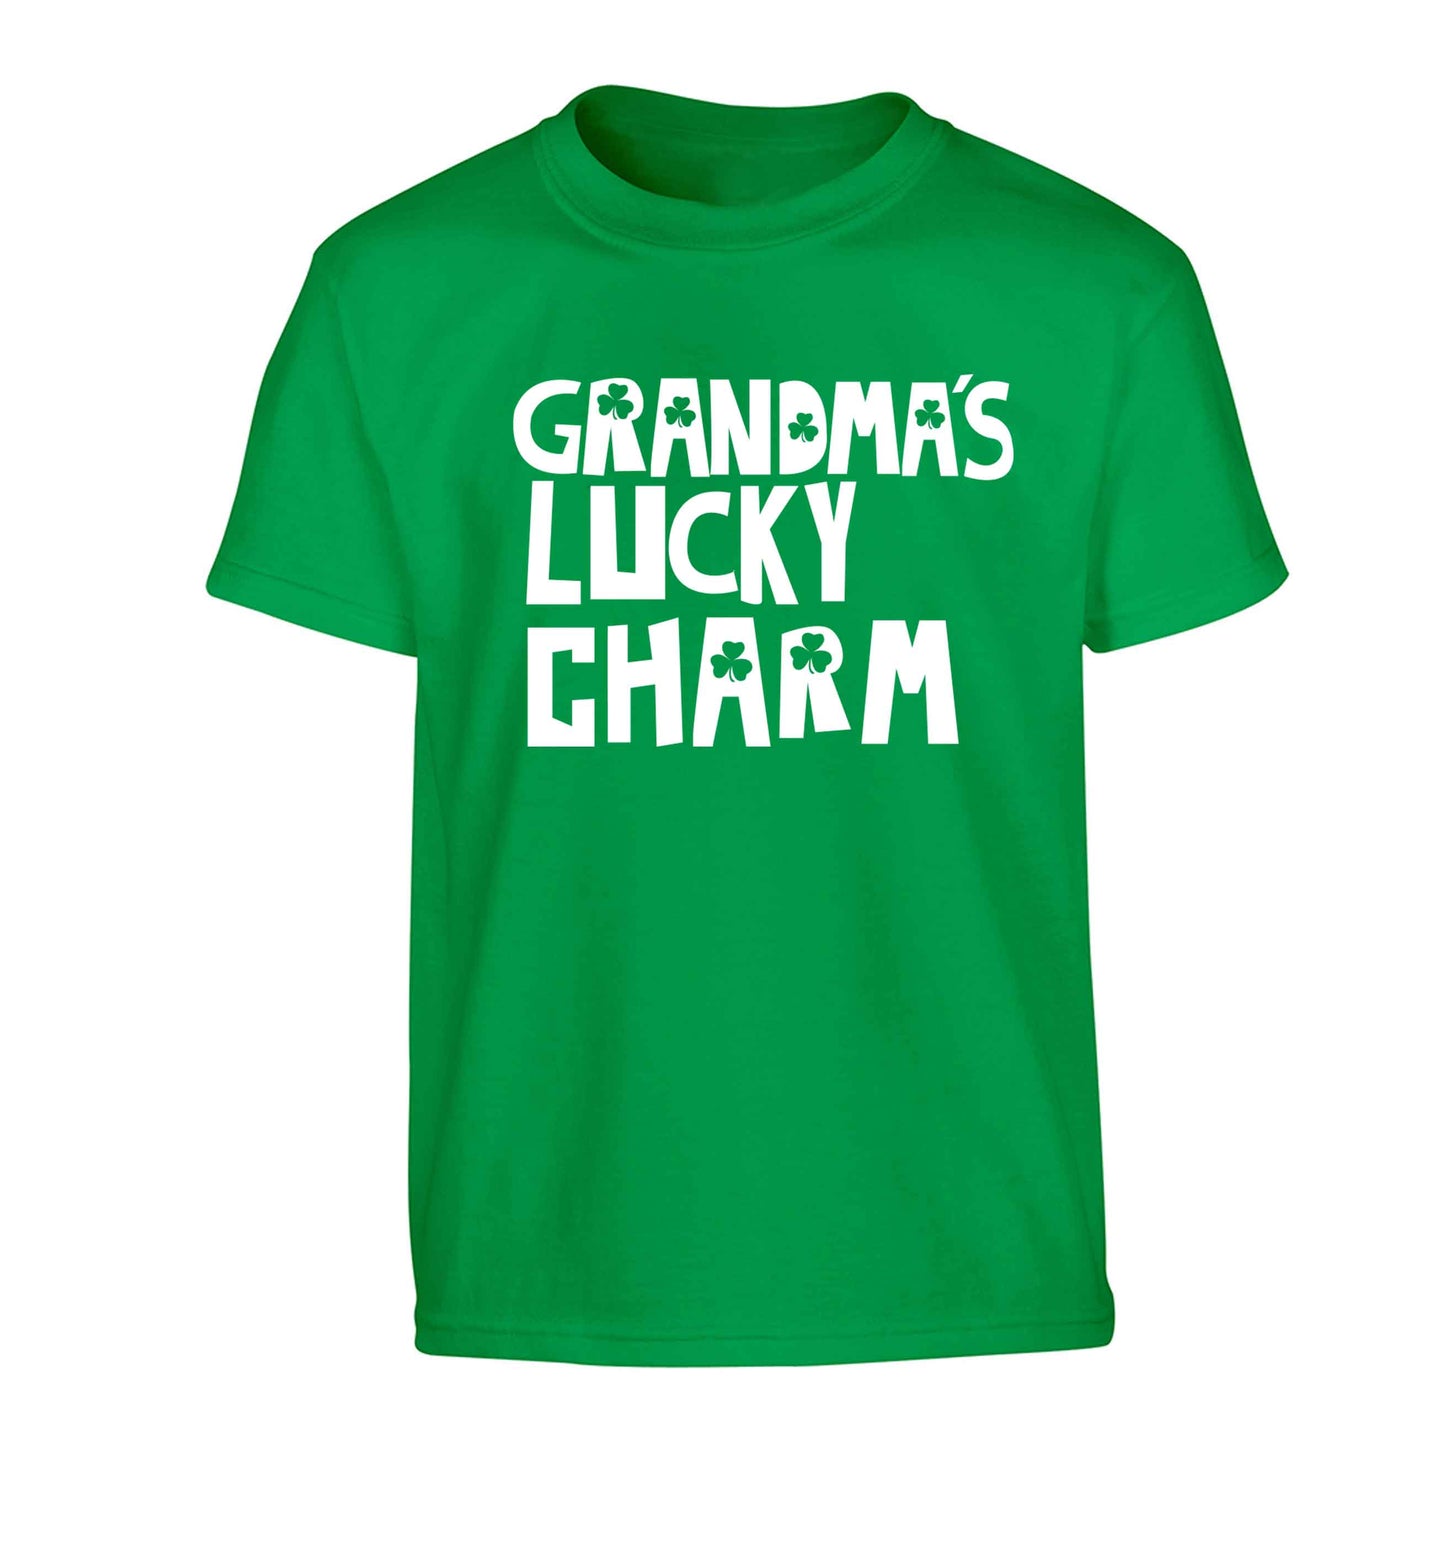 Grandma's lucky charm Children's green Tshirt 12-13 Years